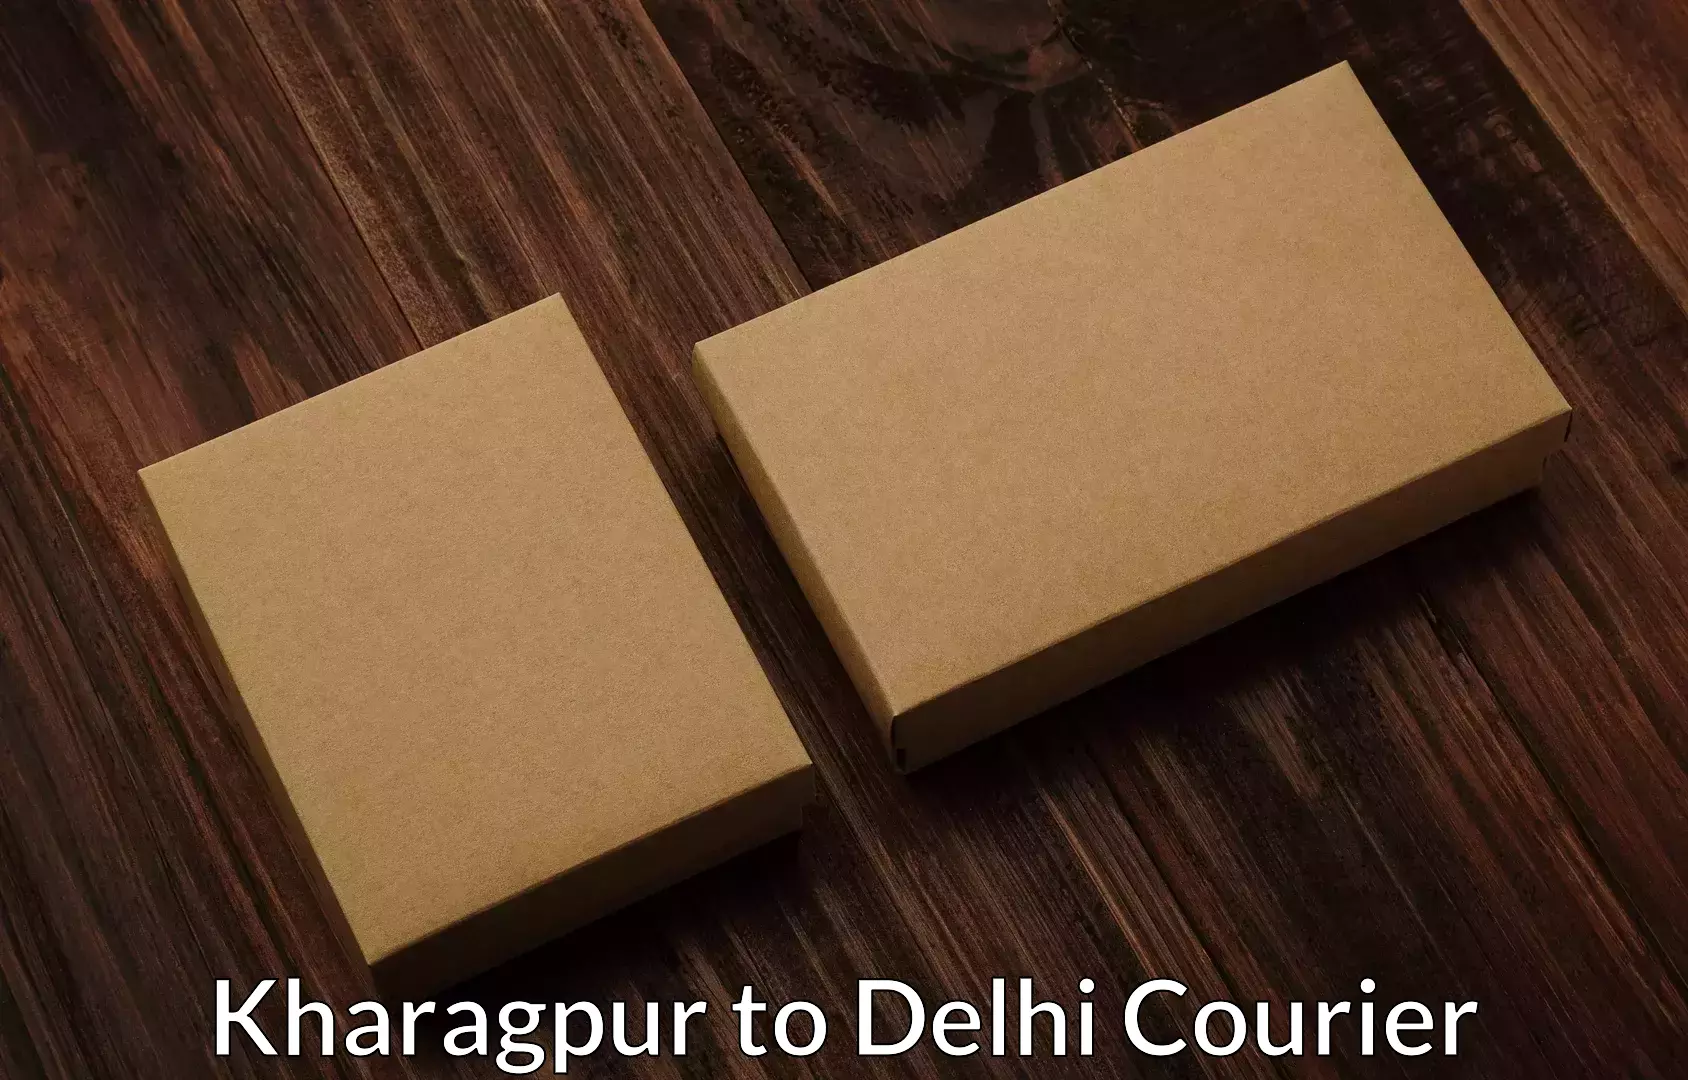 Household goods transporters Kharagpur to University of Delhi